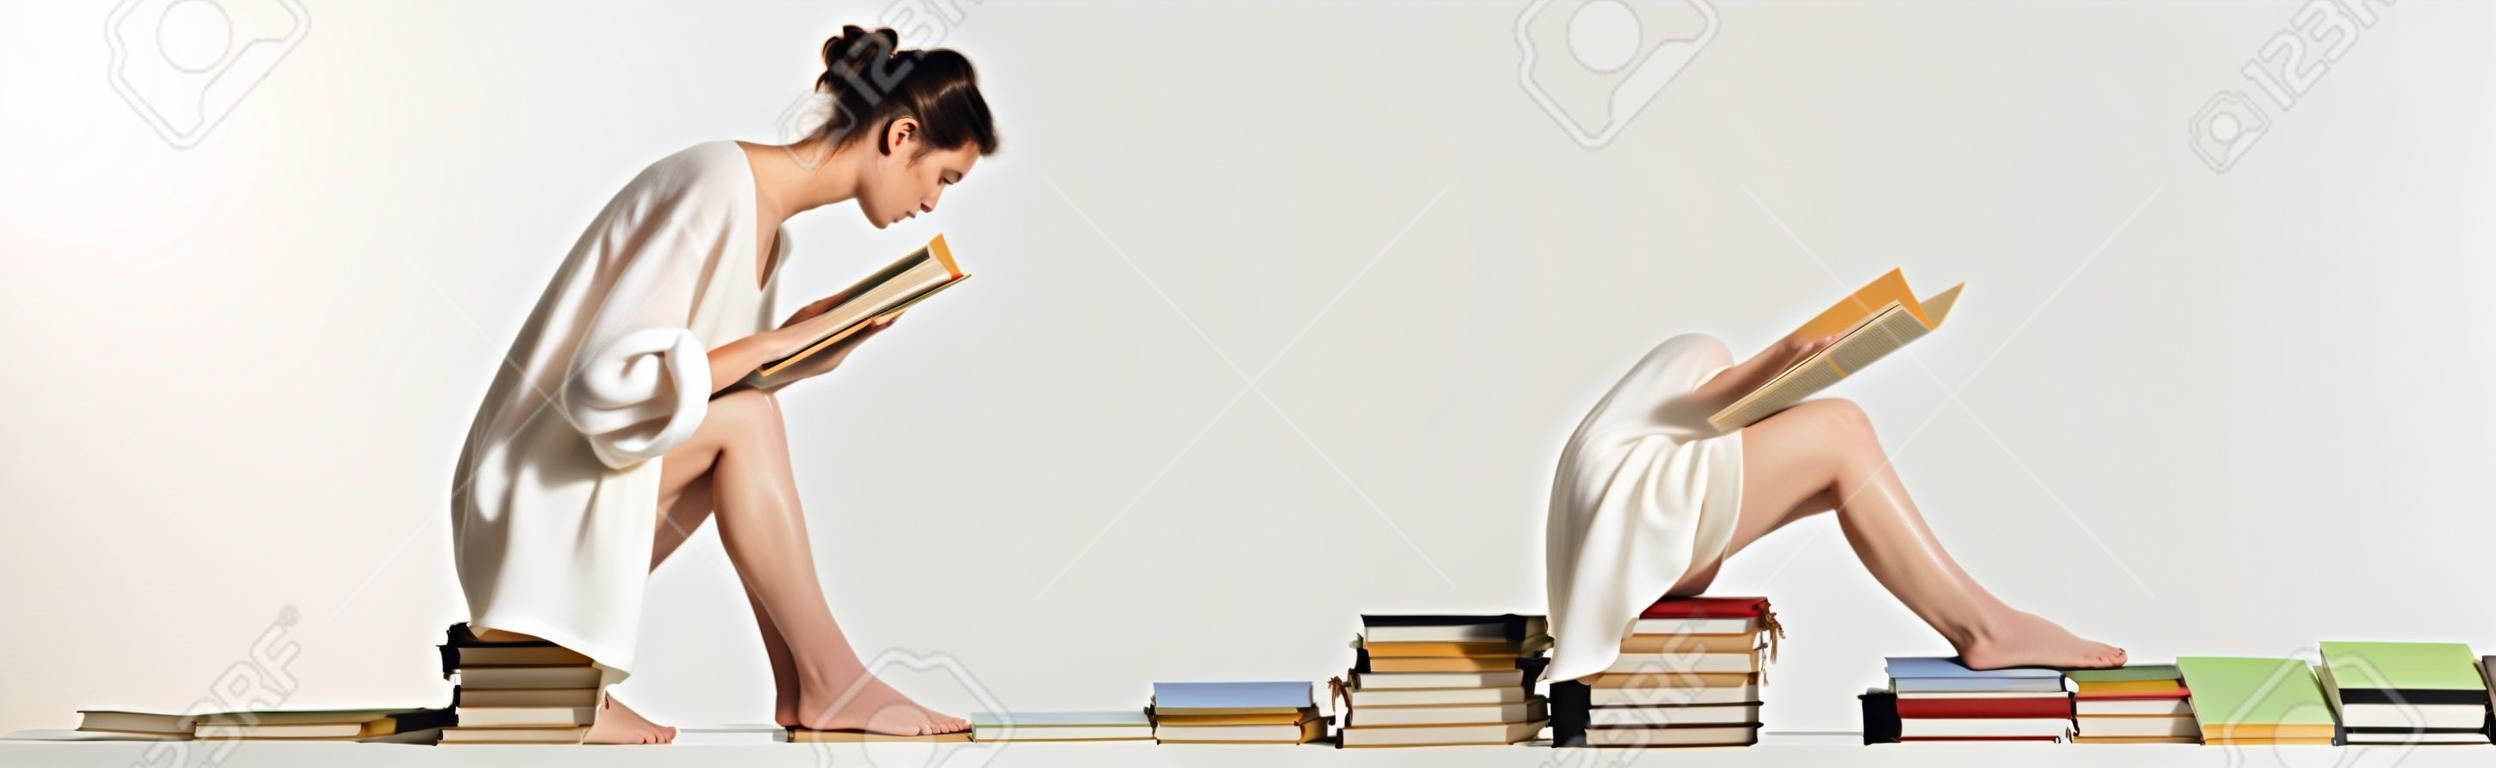 흰색, 배너에 책 더미에 앉아있는 동안 읽는 샌들에 젊은 여자의 측면 보기